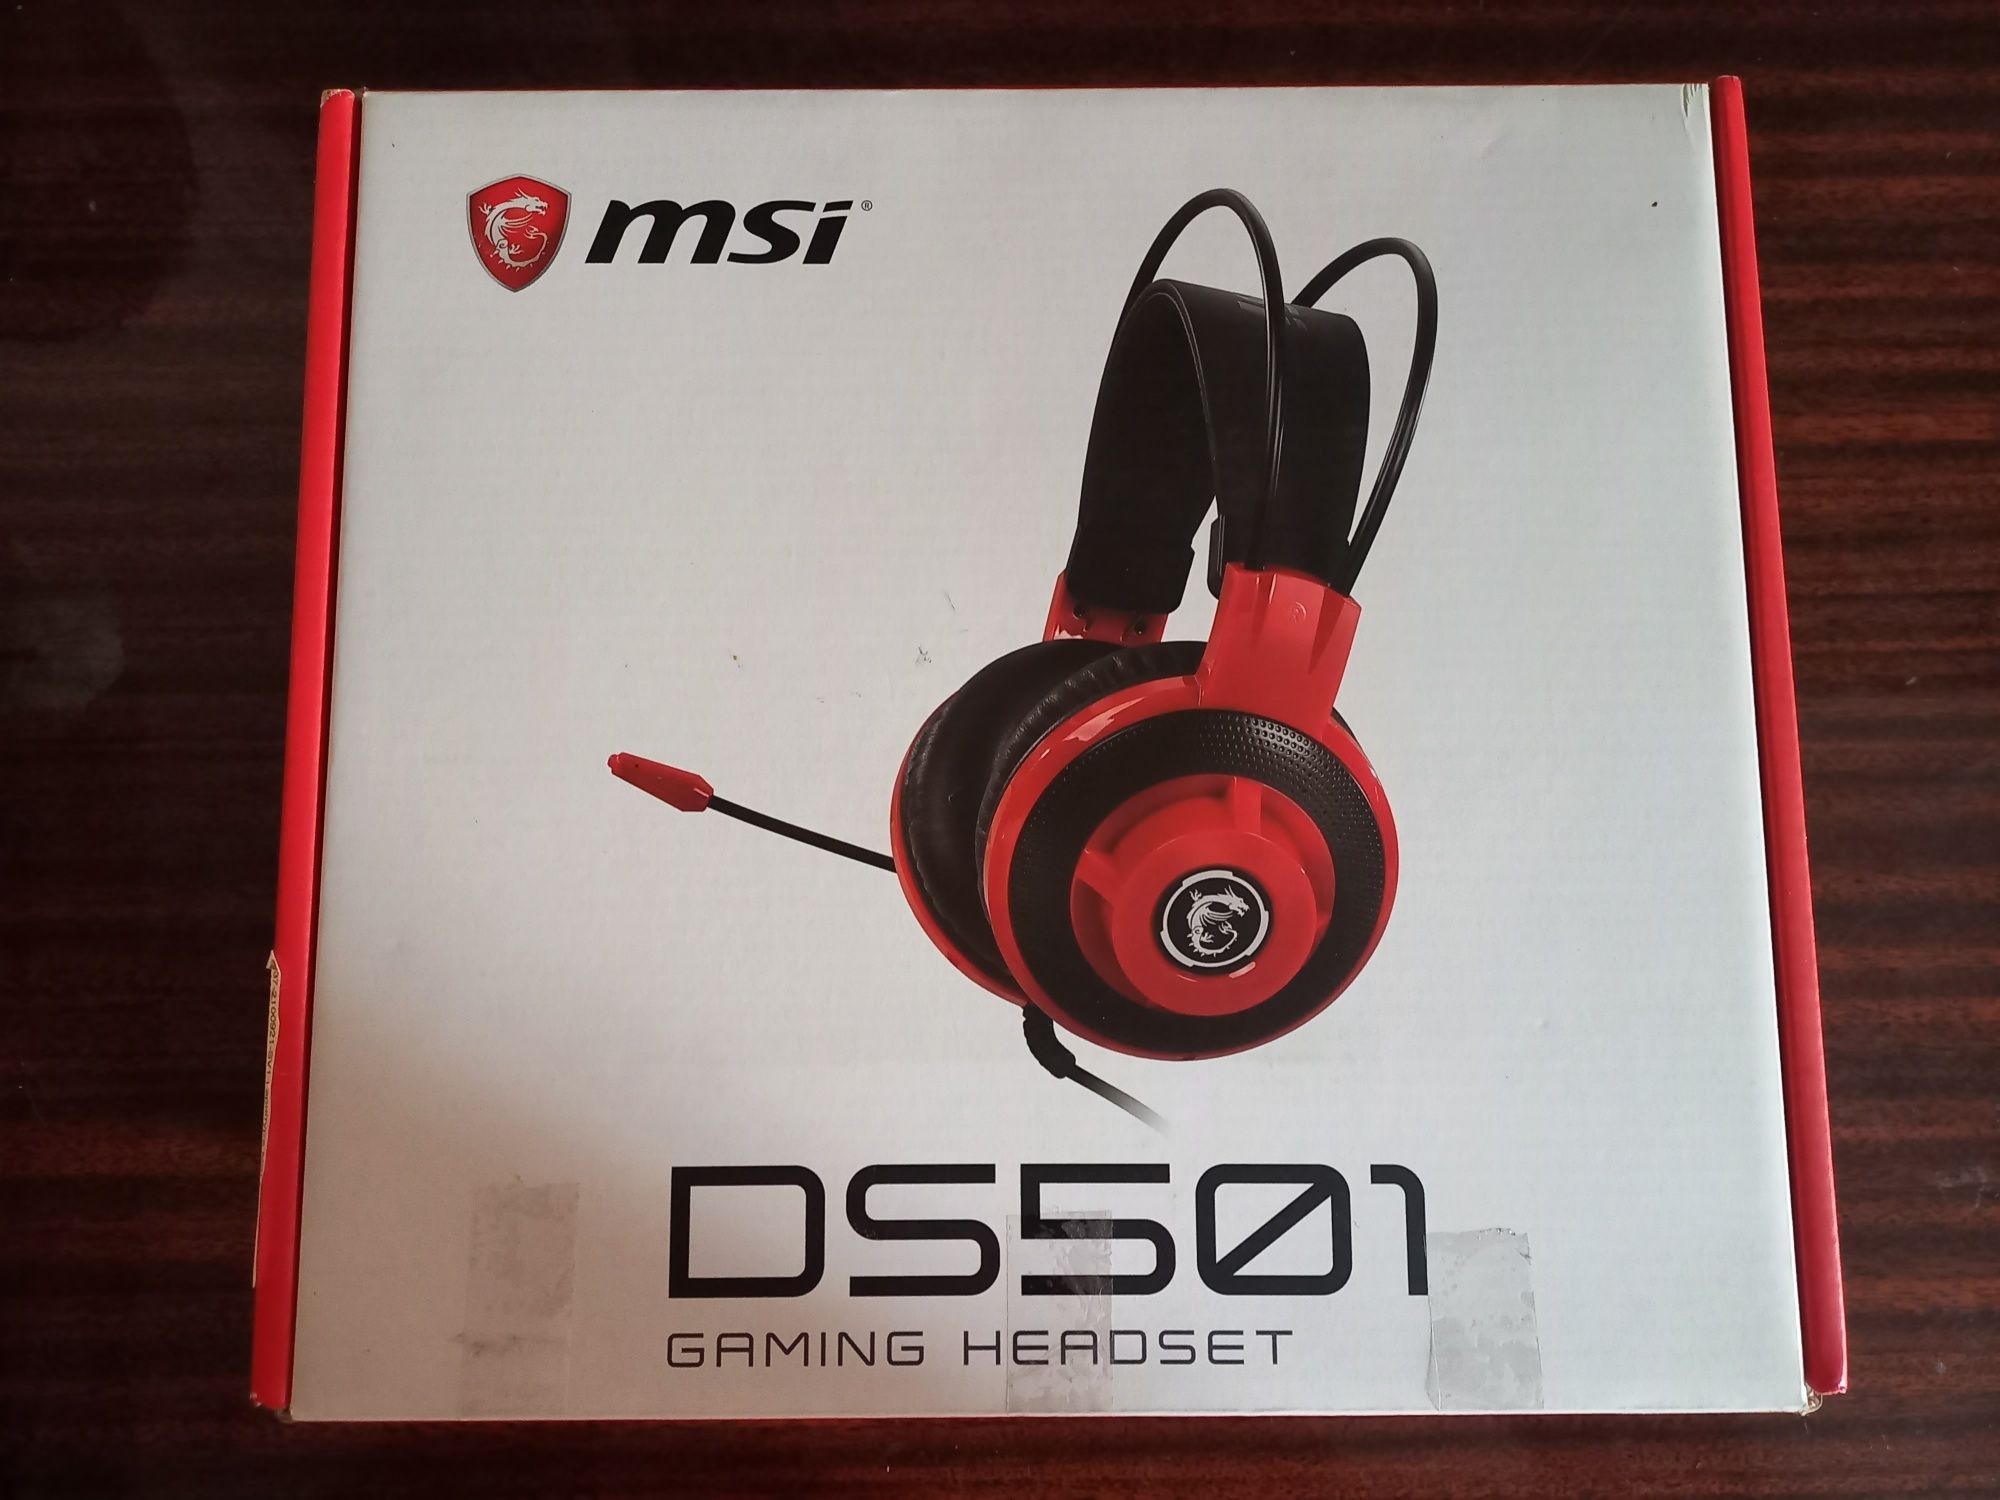 Продам наушники MSI DS501

Наушники MSI DS501 Gaming HeadsetНаушники M